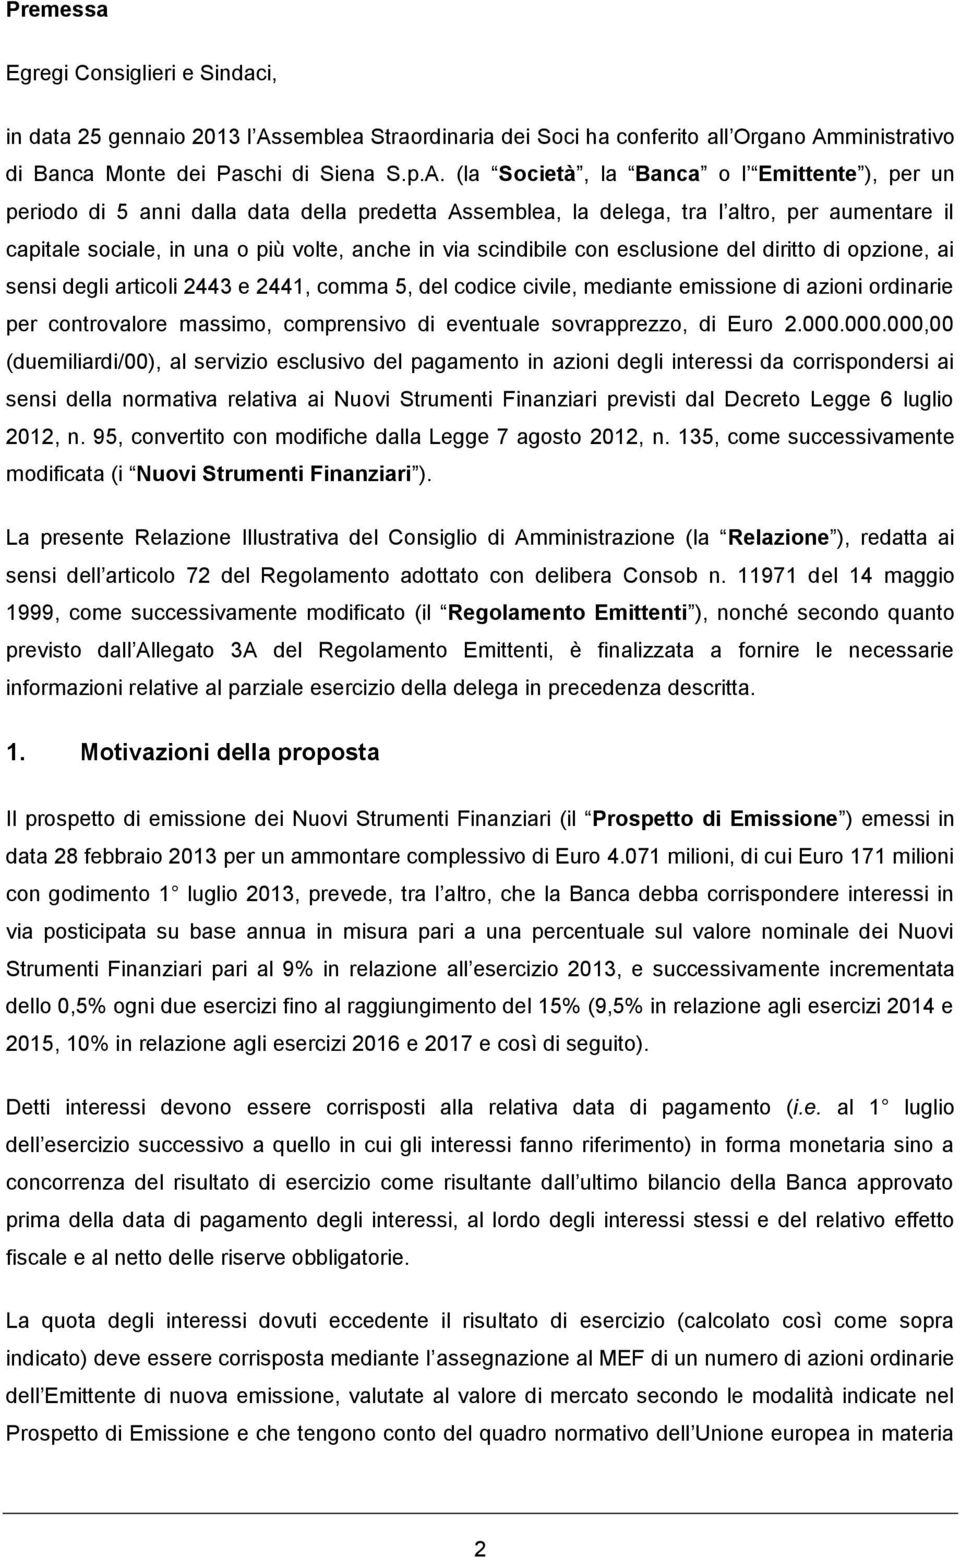 ministrativo di Banca Monte dei Paschi di Siena S.p.A.